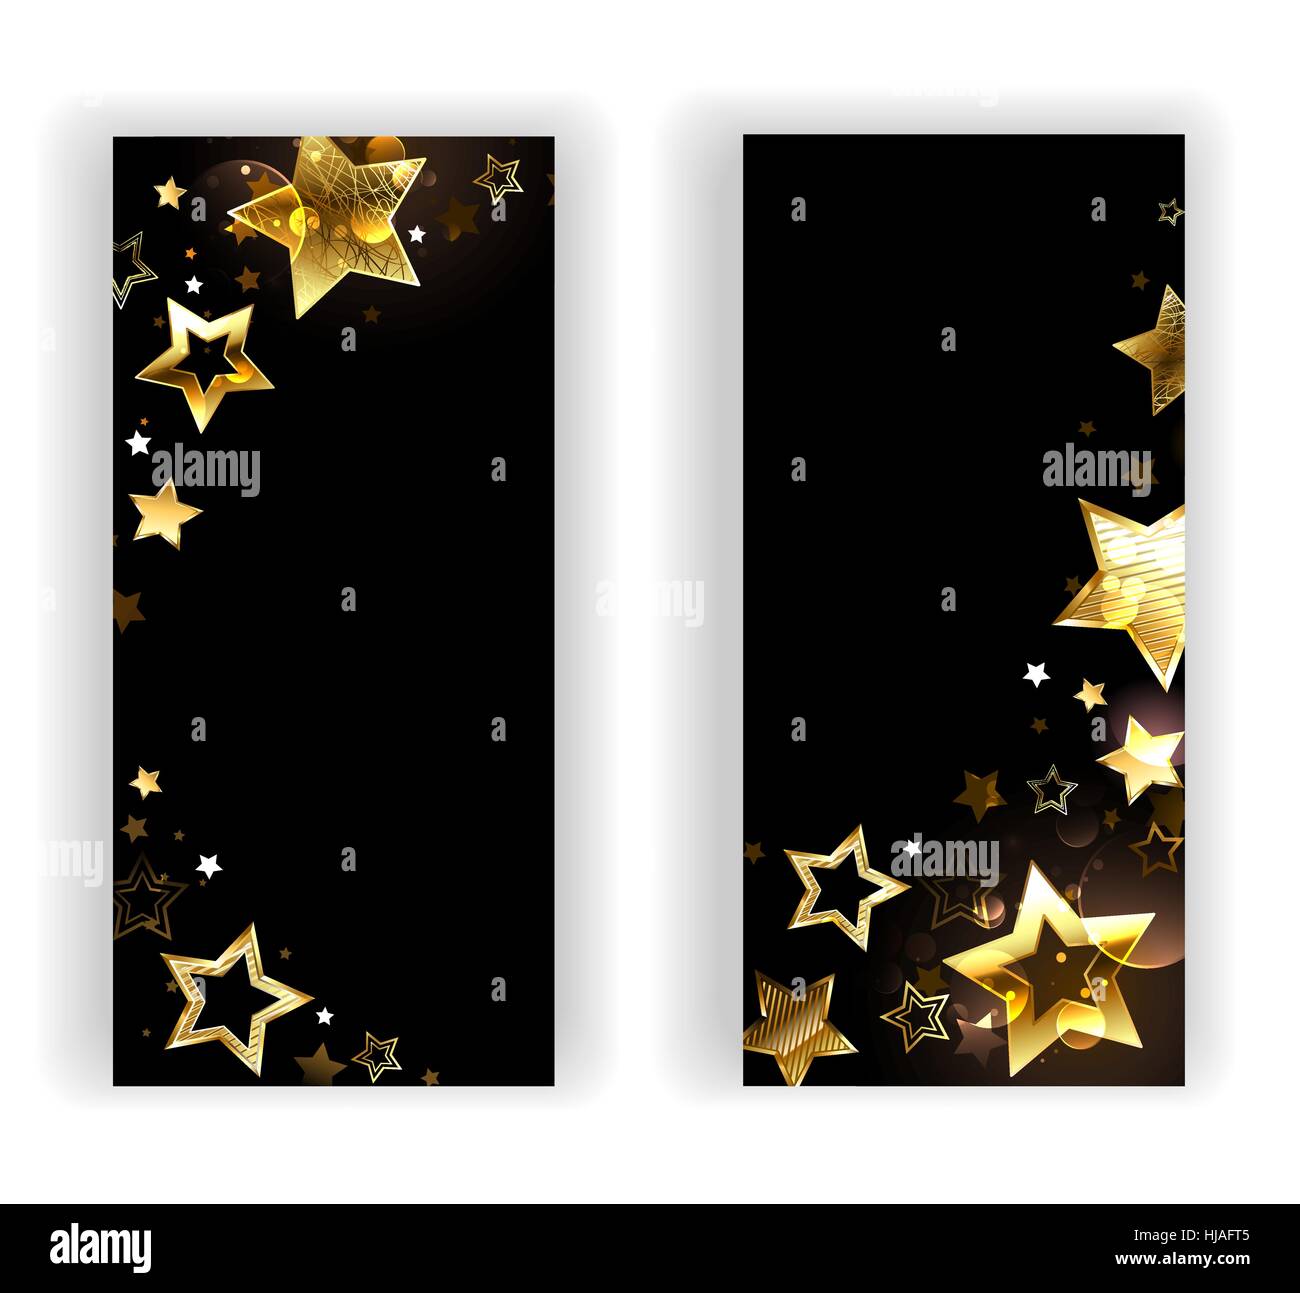 Zwei Banner mit kleinen, glänzenden goldenen Sternen auf einem schwarzen Hintergrund. Design mit goldenen Sternen. Stock Vektor